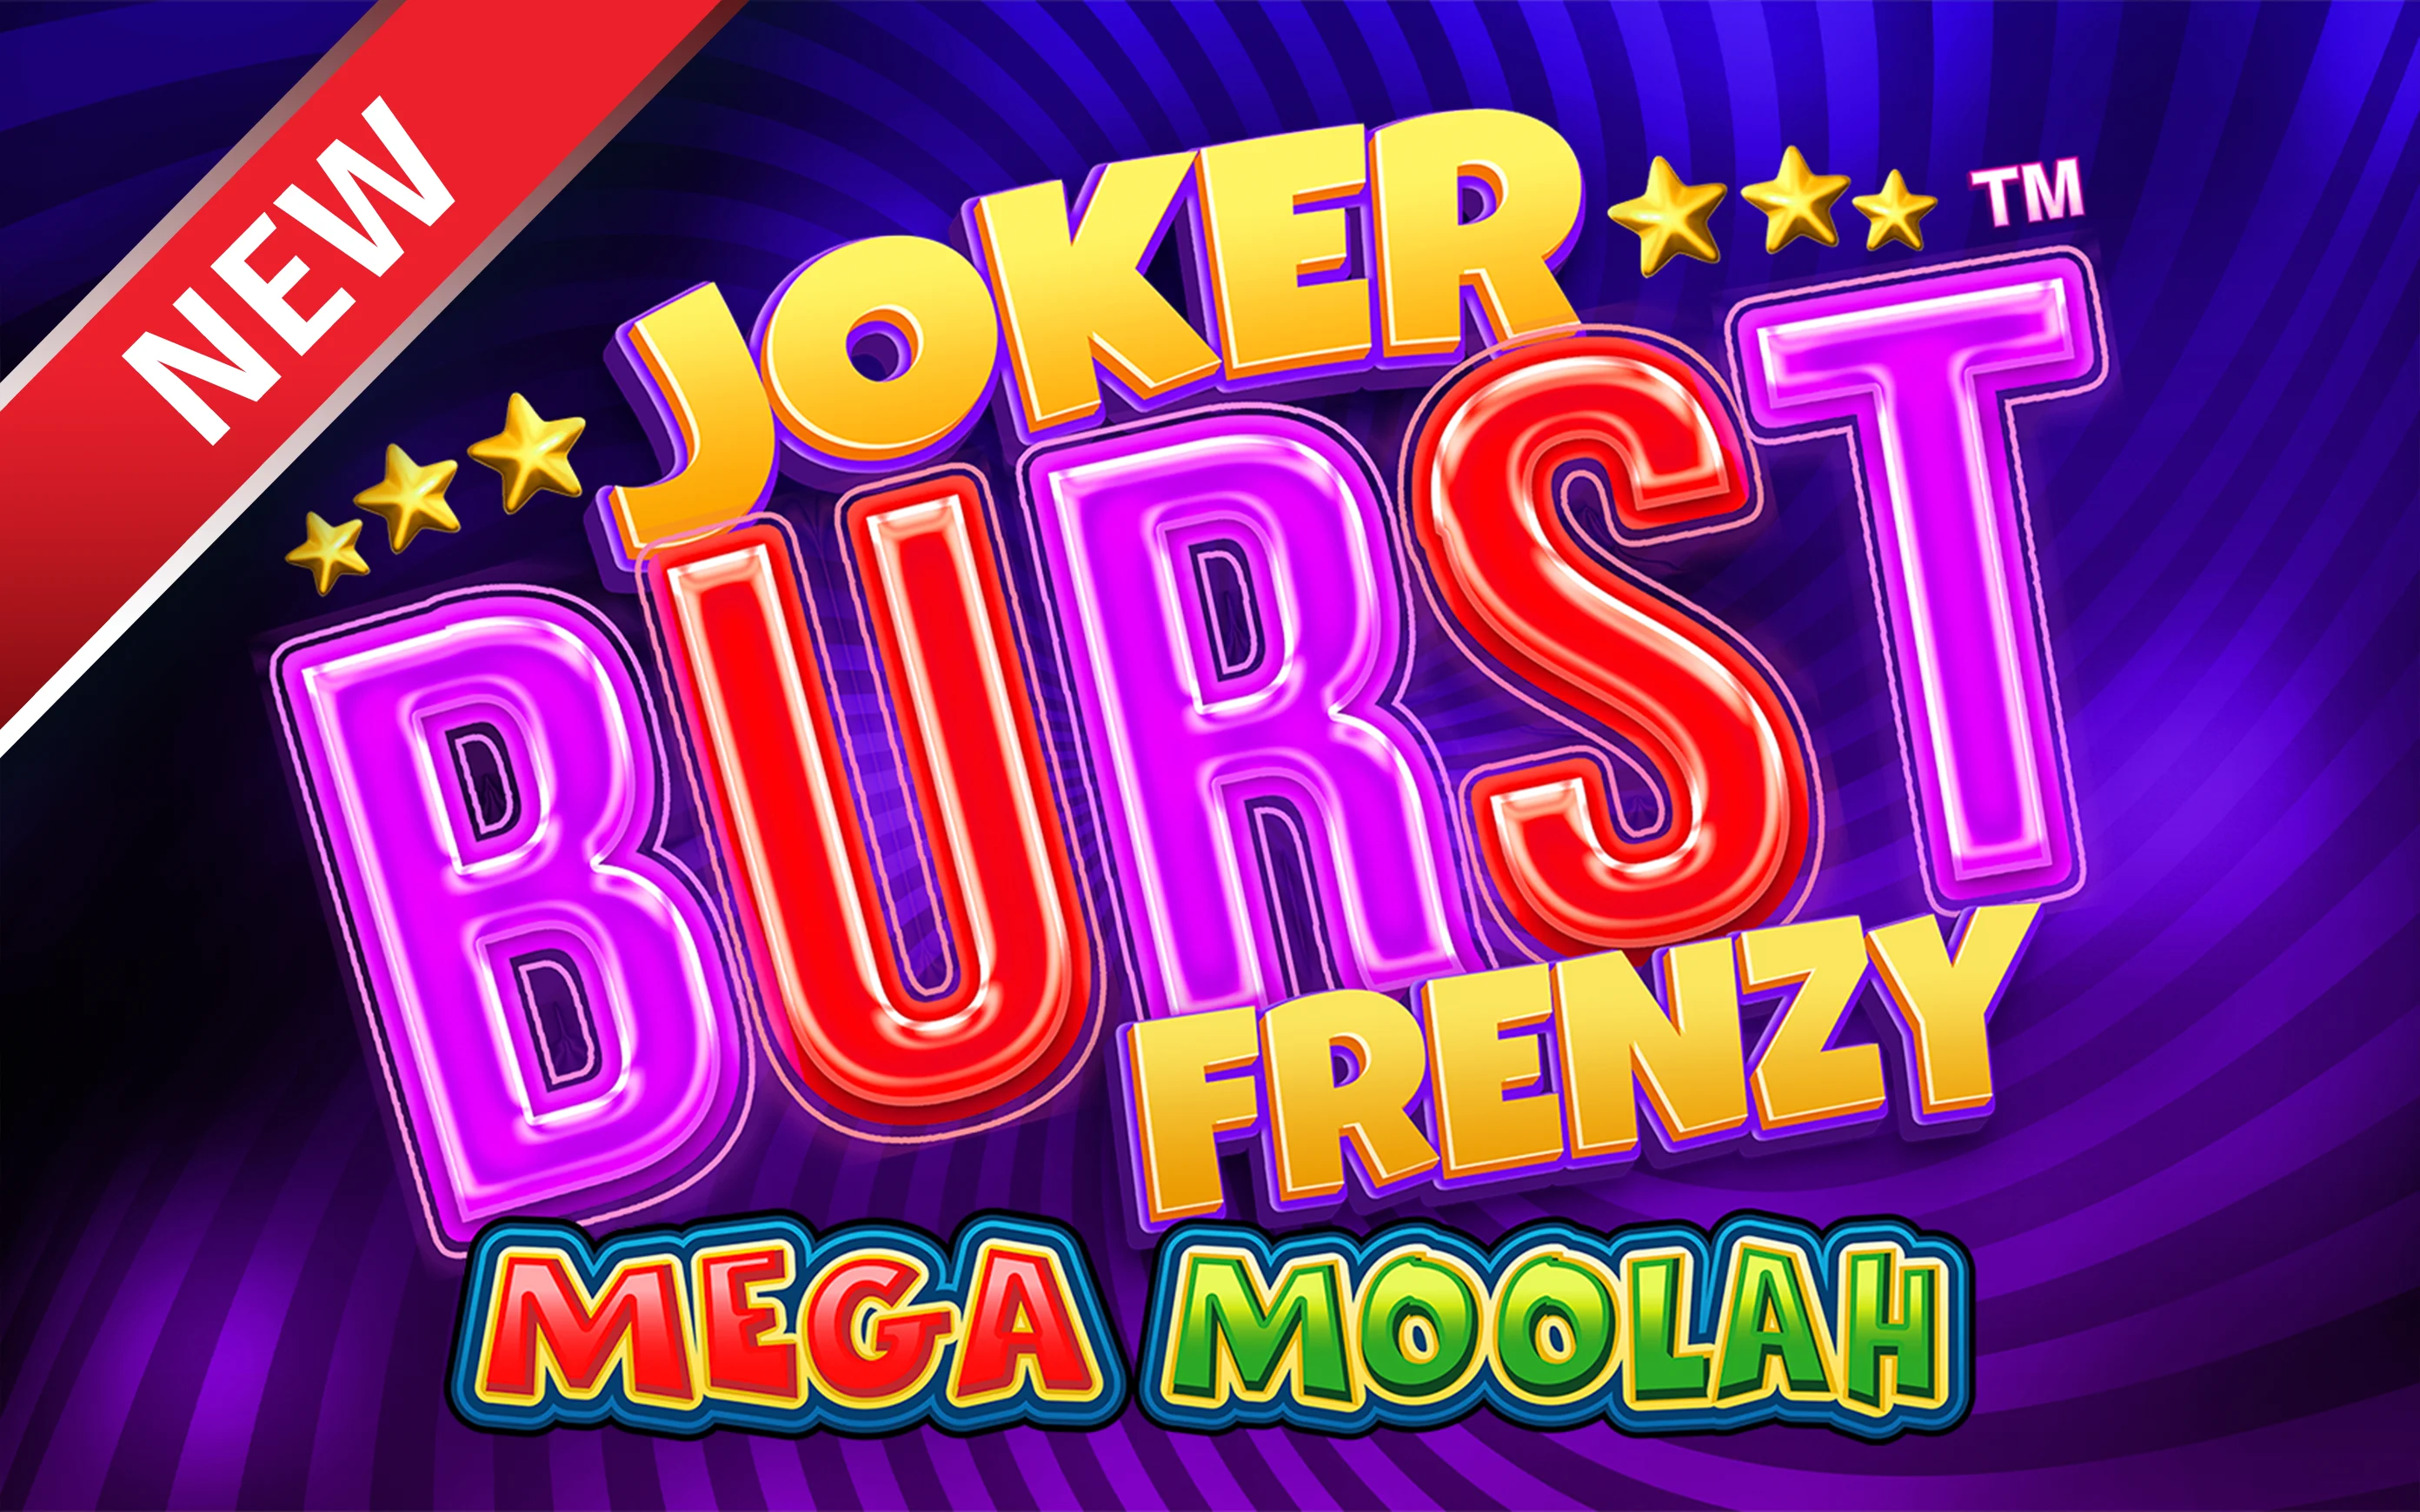 Chơi Joker Burst Frenzy Mega Moolah trên sòng bạc trực tuyến Starcasino.be